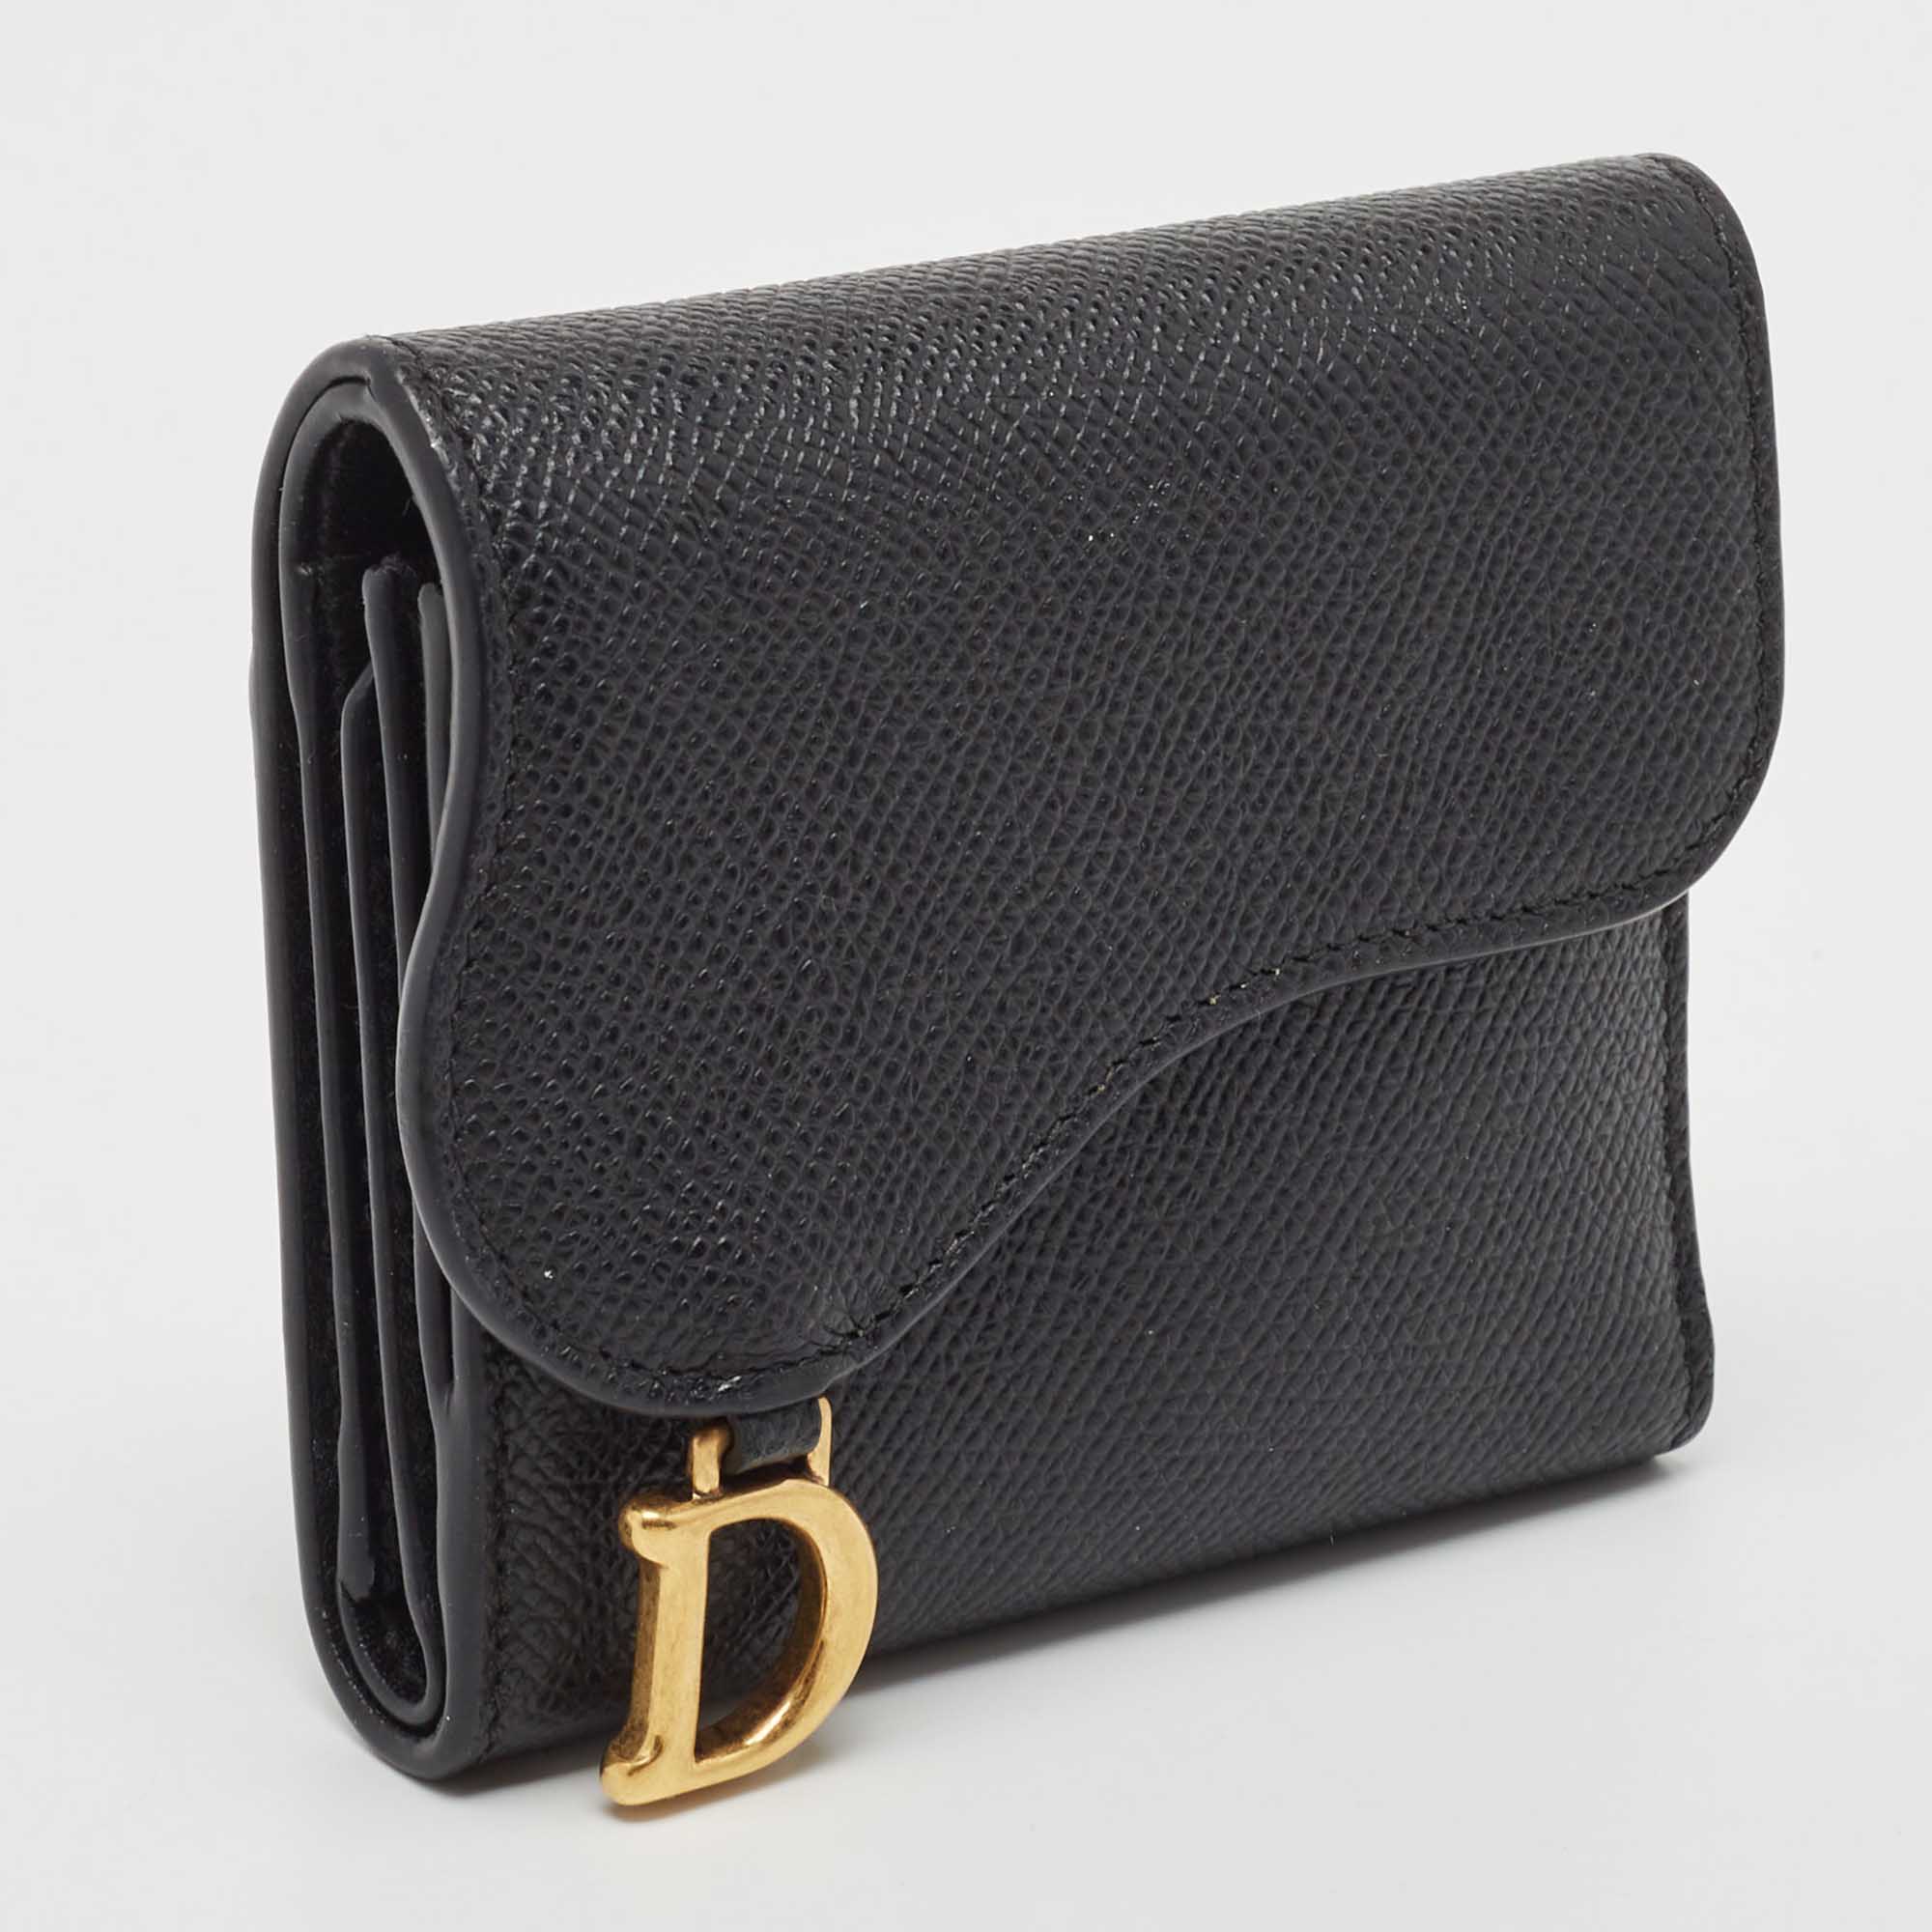 Dior Black Leather Saddle Card Holder